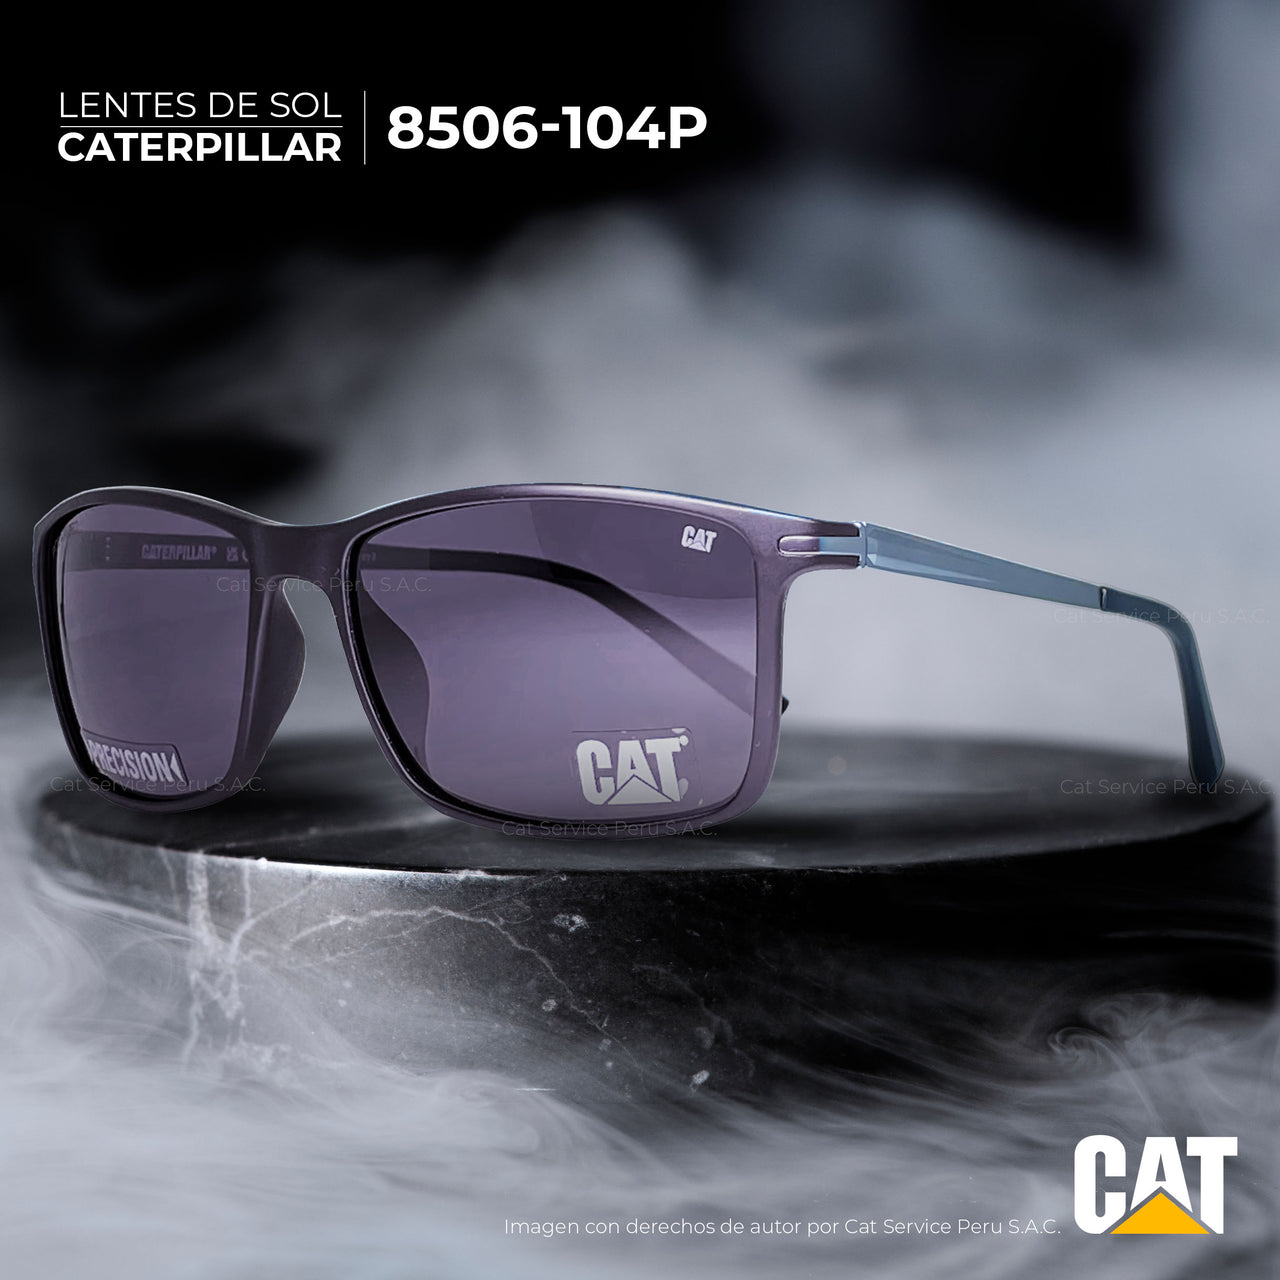 कैट सीपीएस-8506-104पी ध्रुवीकृत ग्रे मून्स धूप का चश्मा 